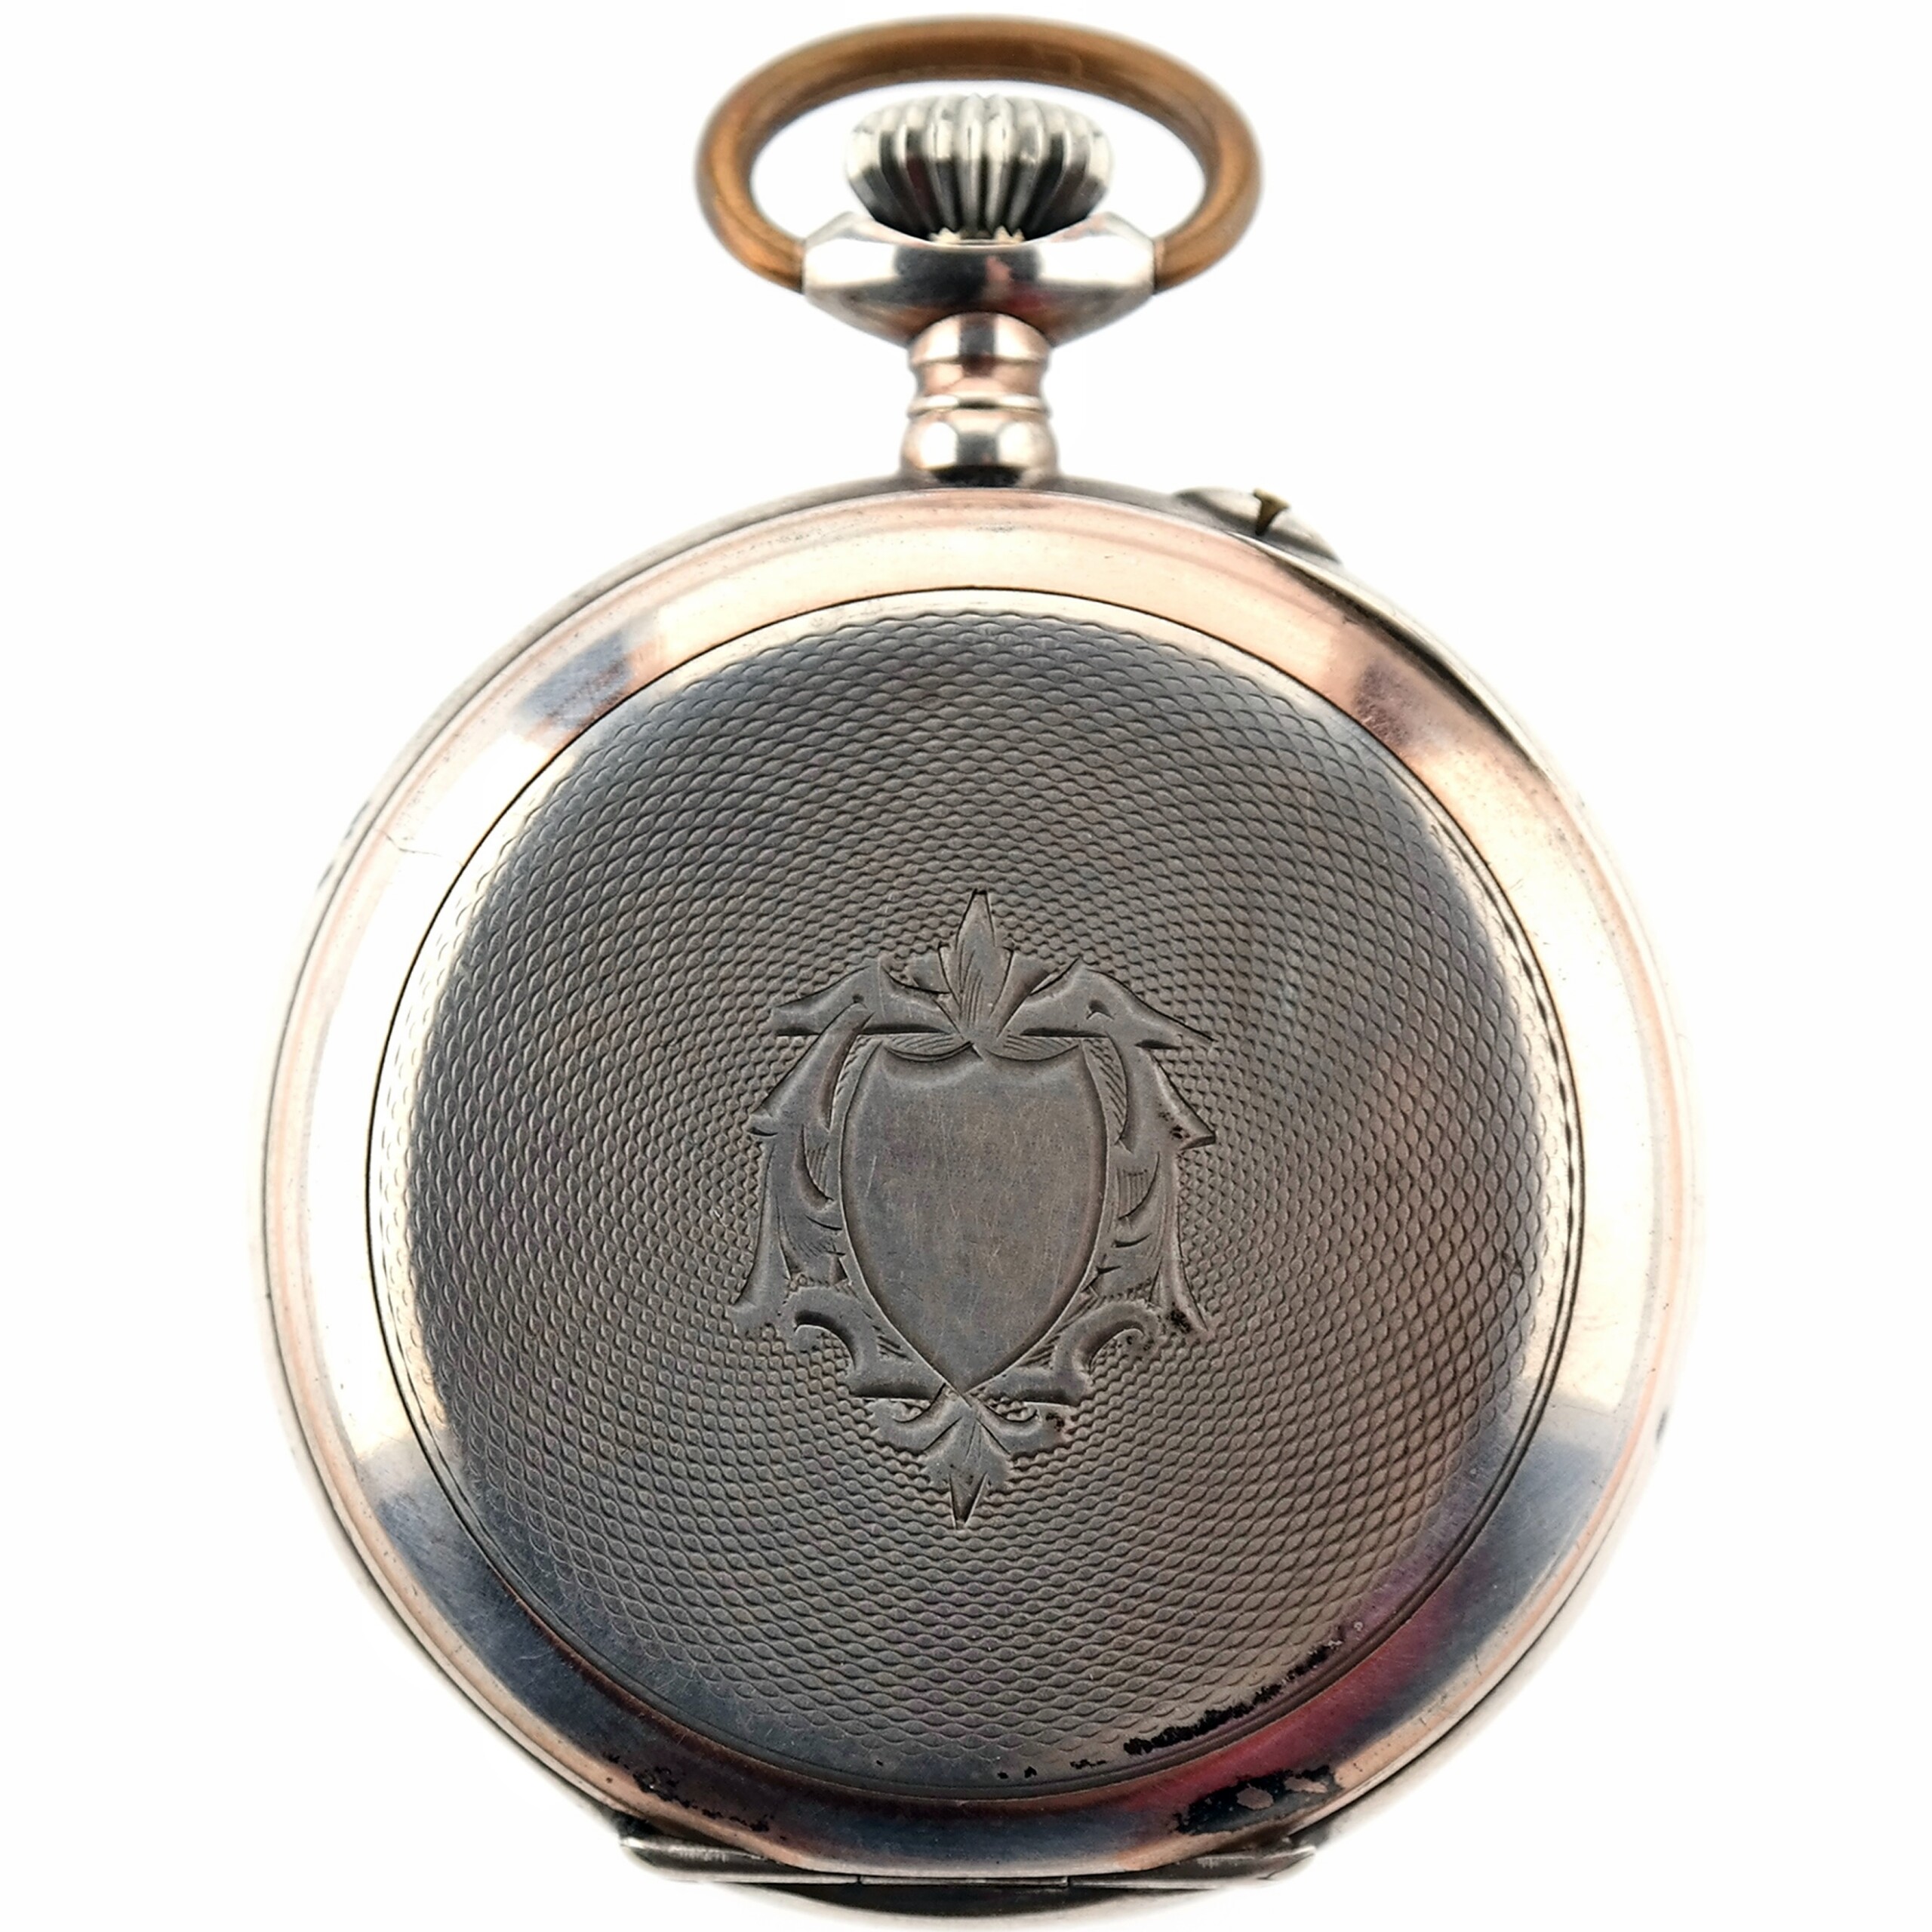 HEBDOMAS 8 Days Vintage Pocket Silver Watch